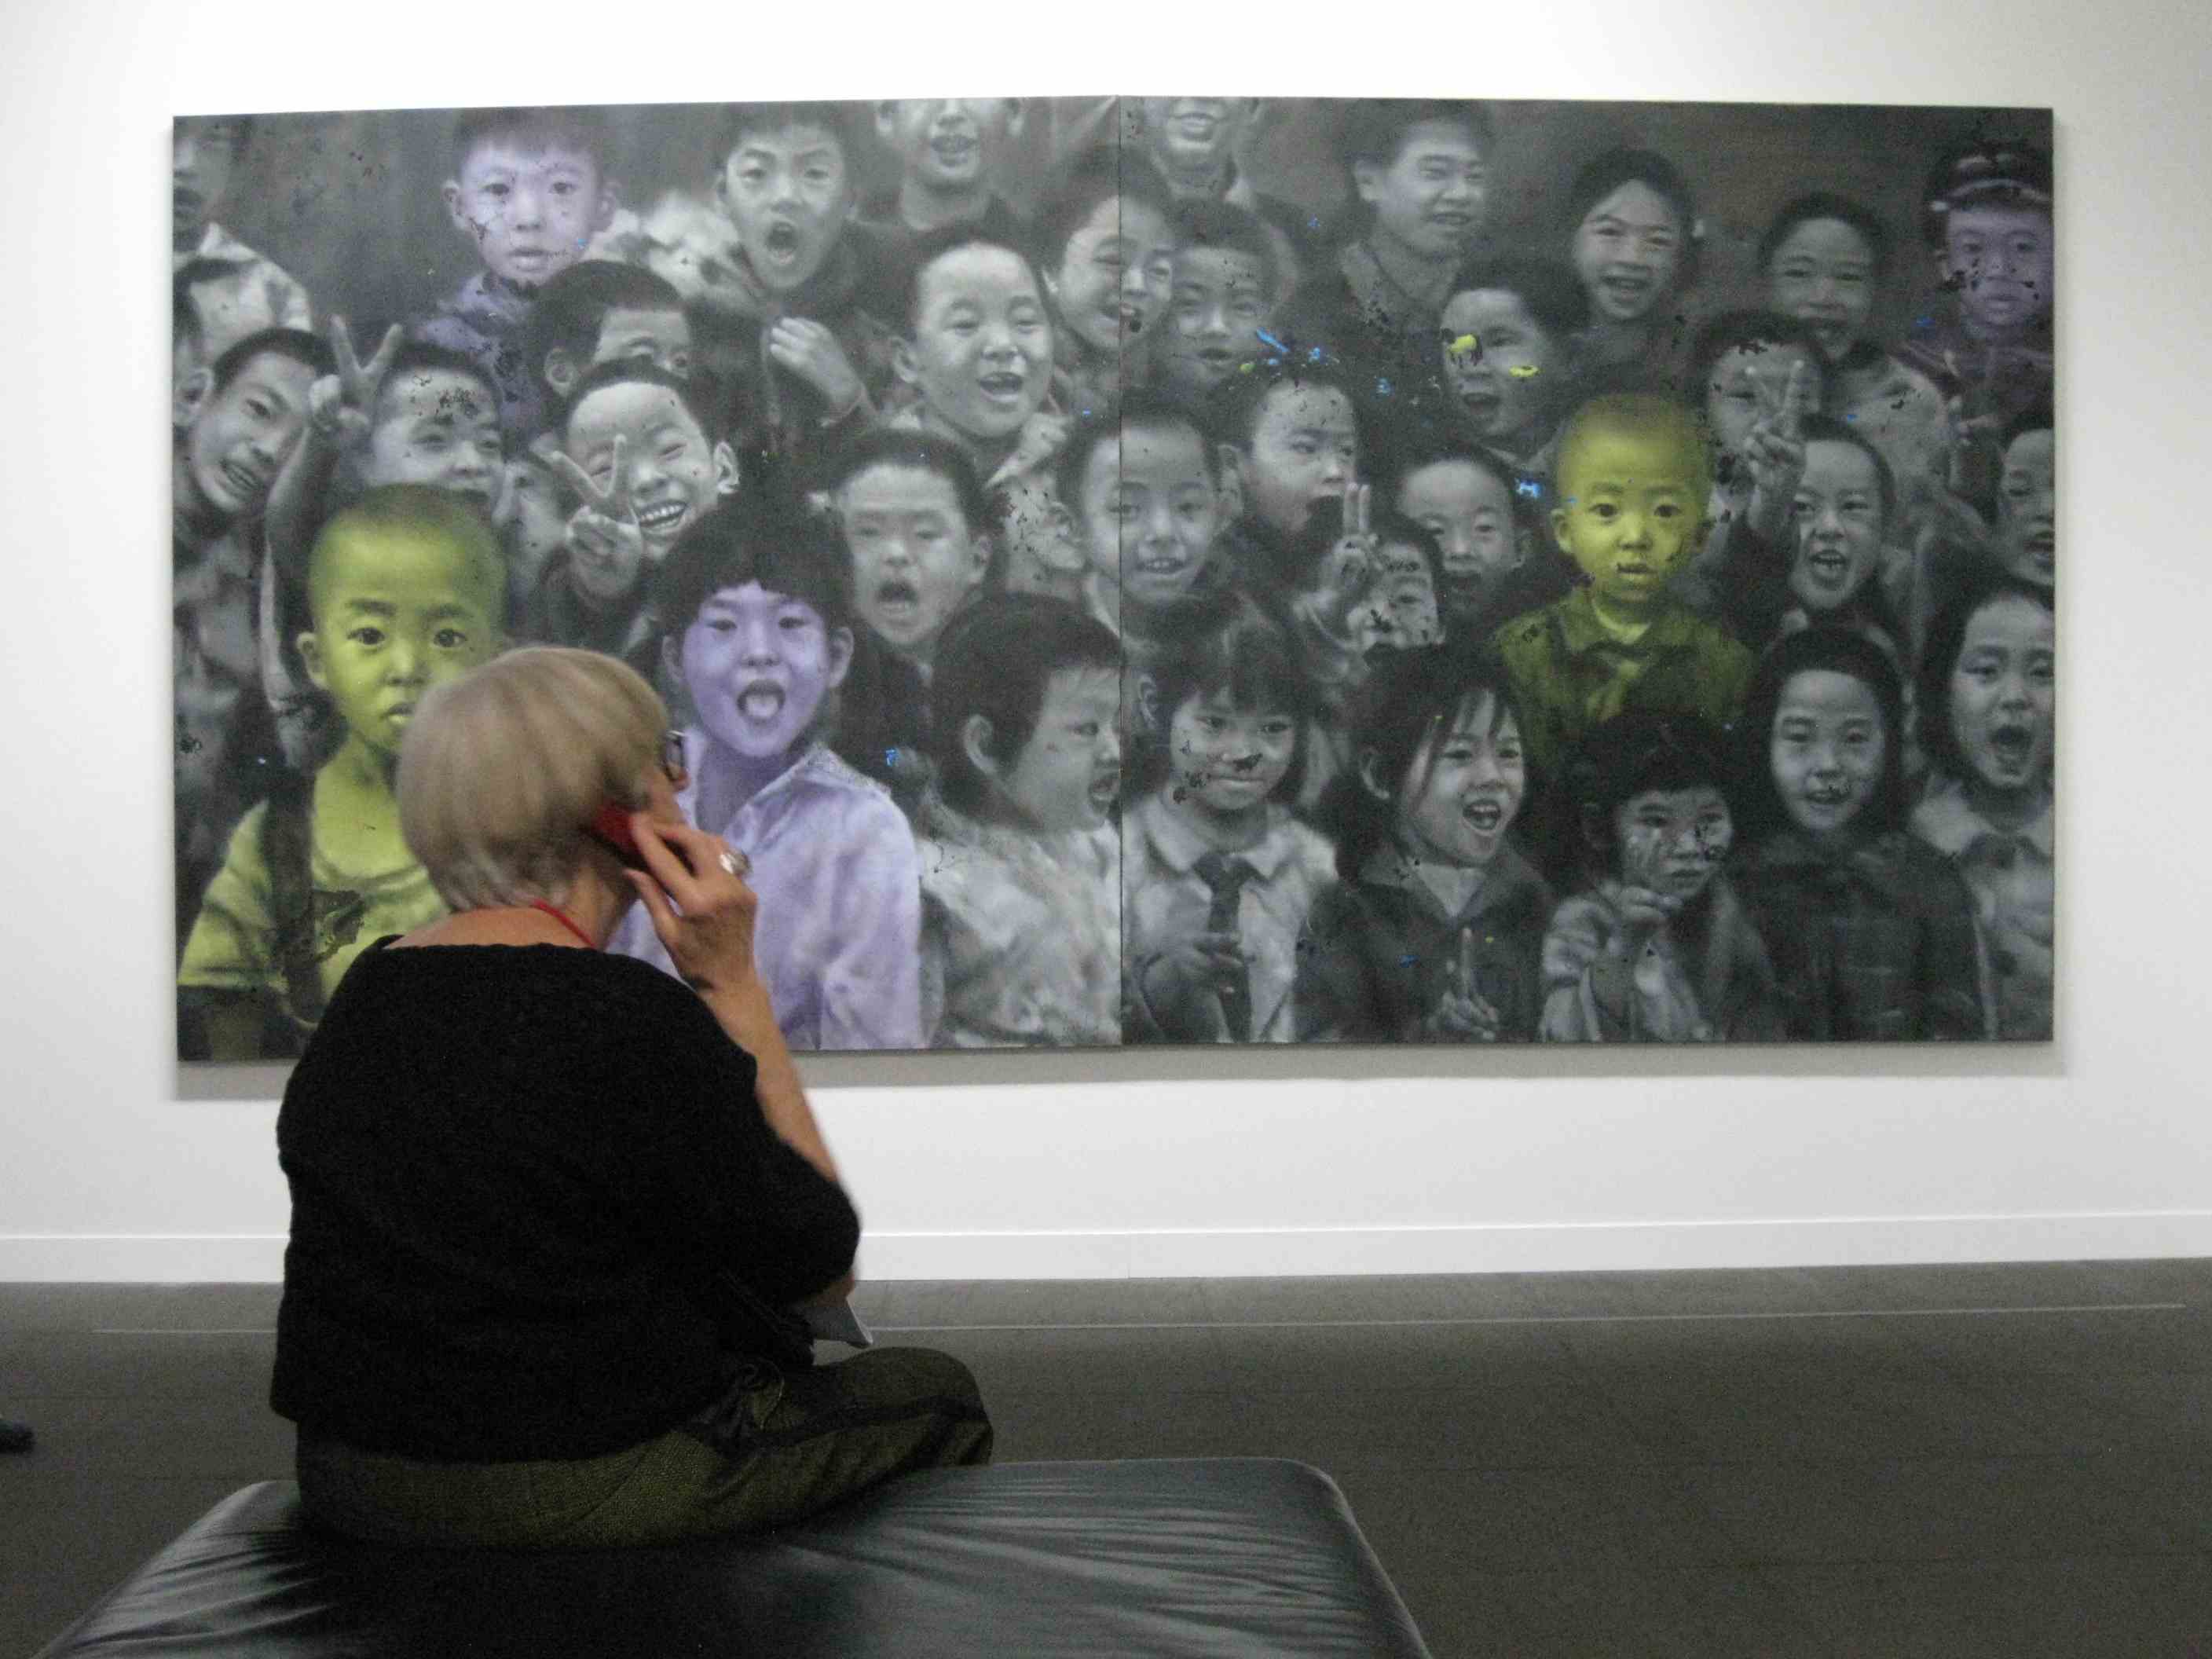 Ausstellung Chinese Whispers in Bern: "Ensemble" von Li Tianbing